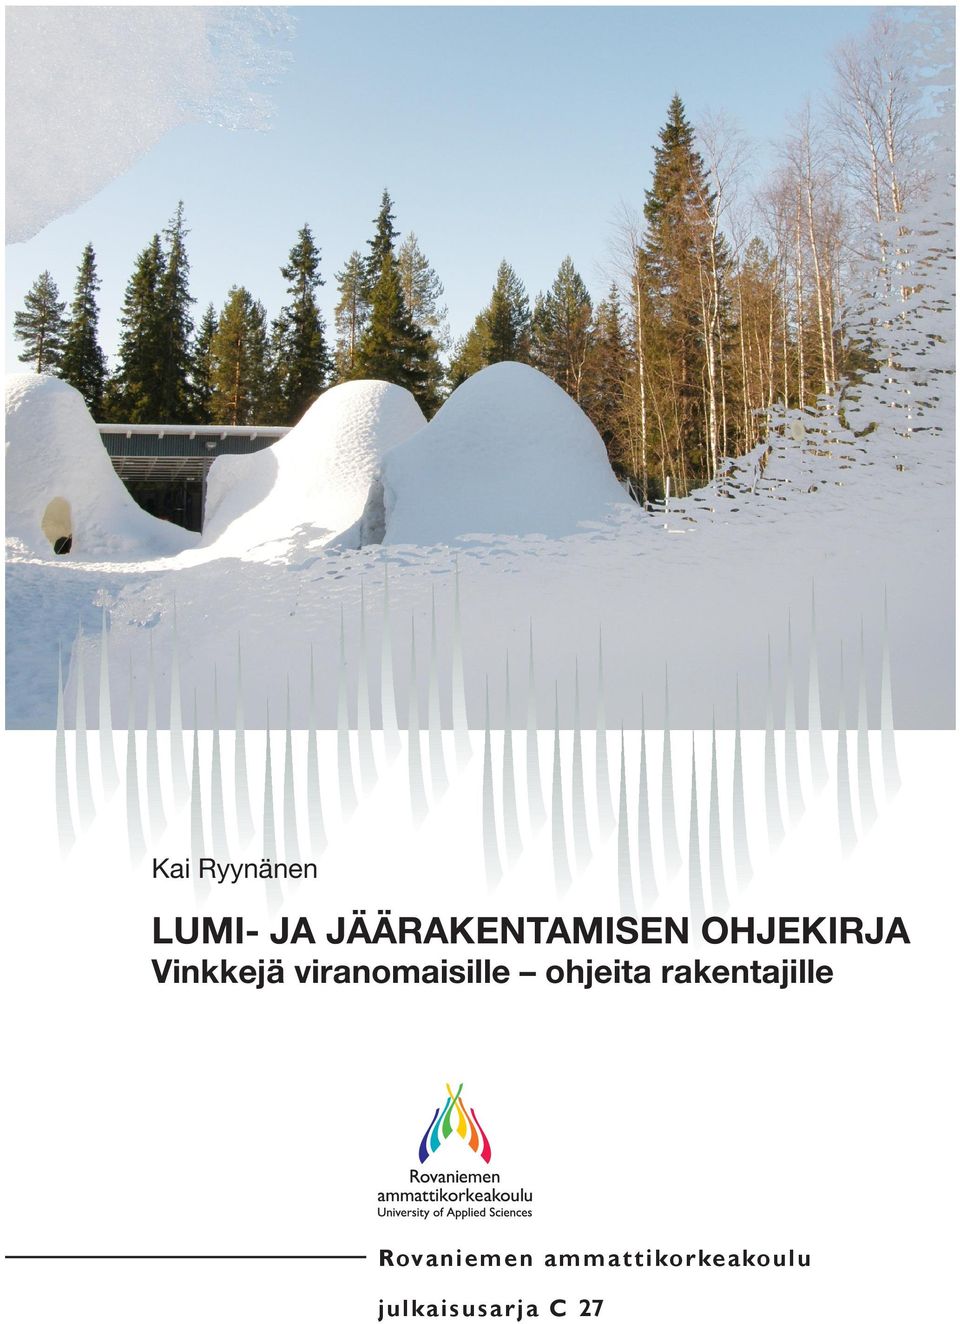 Kai Ryynänen Lumi- ja jäärakentamisen ohjekirja on pohjoisiin oloihin laadittu työkalu kaikille kylmä- ja talviteknologian alalla toimiville tahoille.